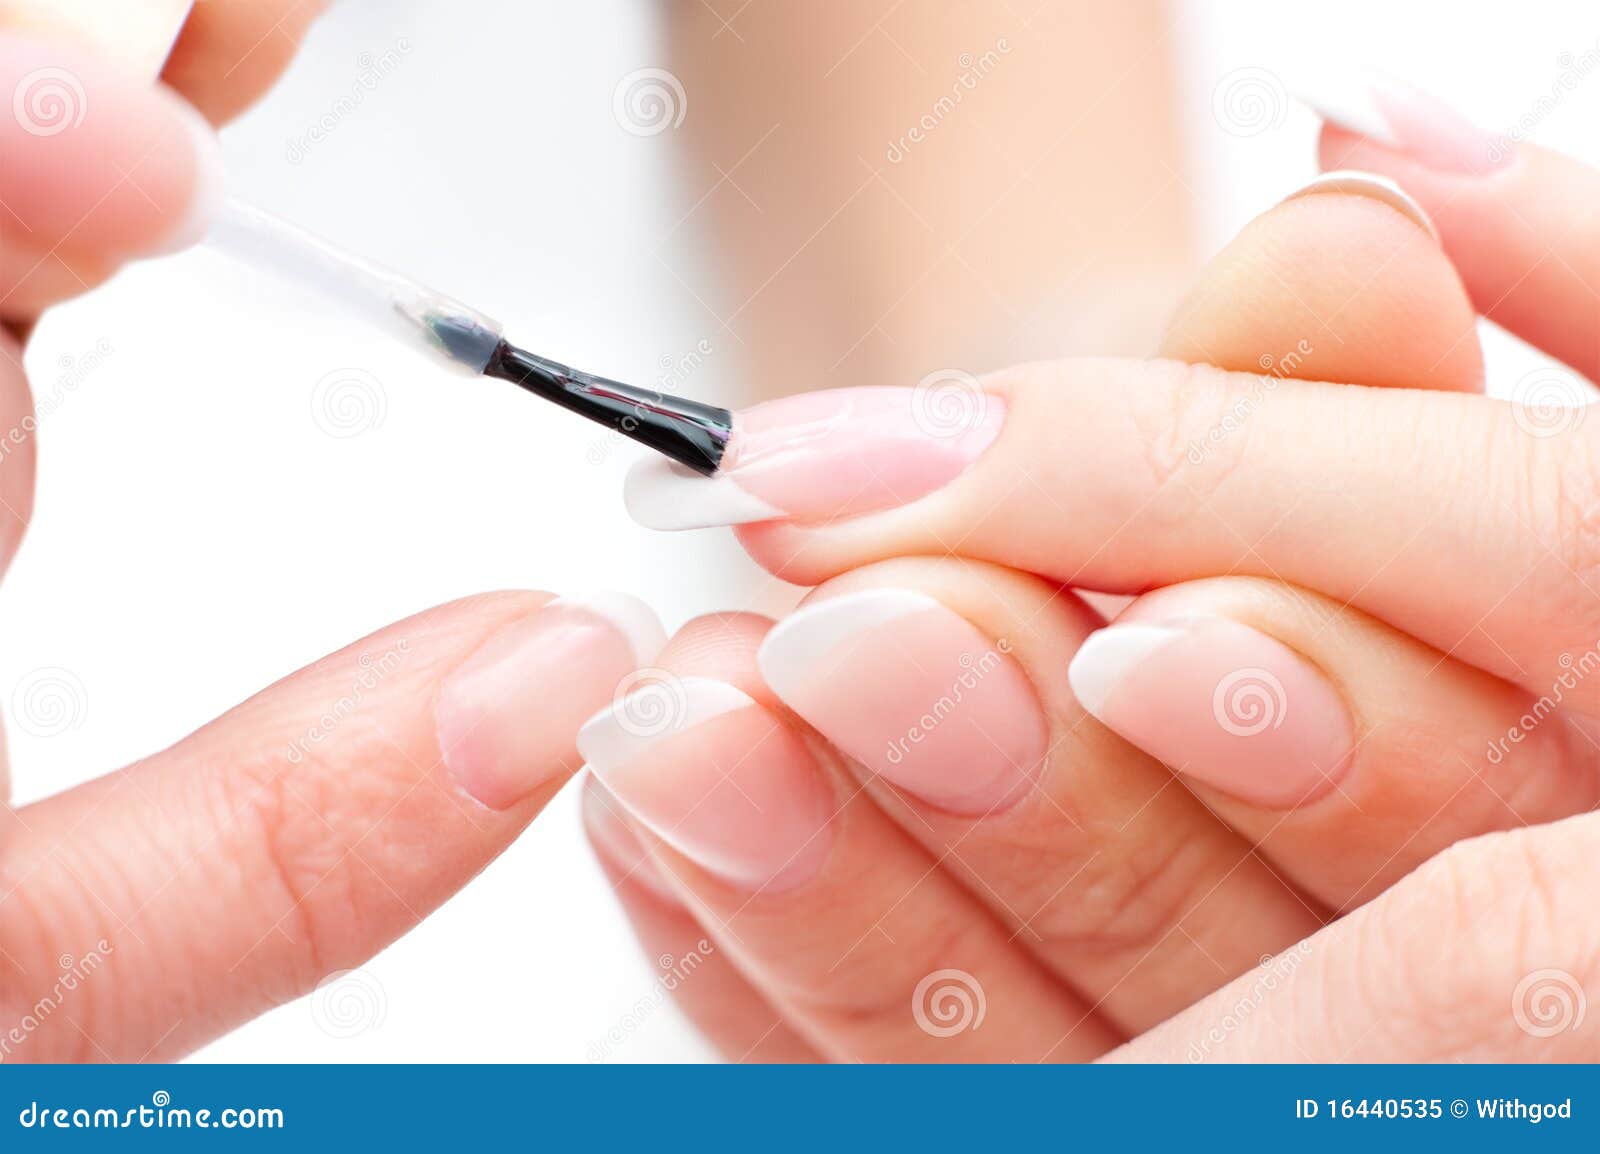 manicure procedure, macro